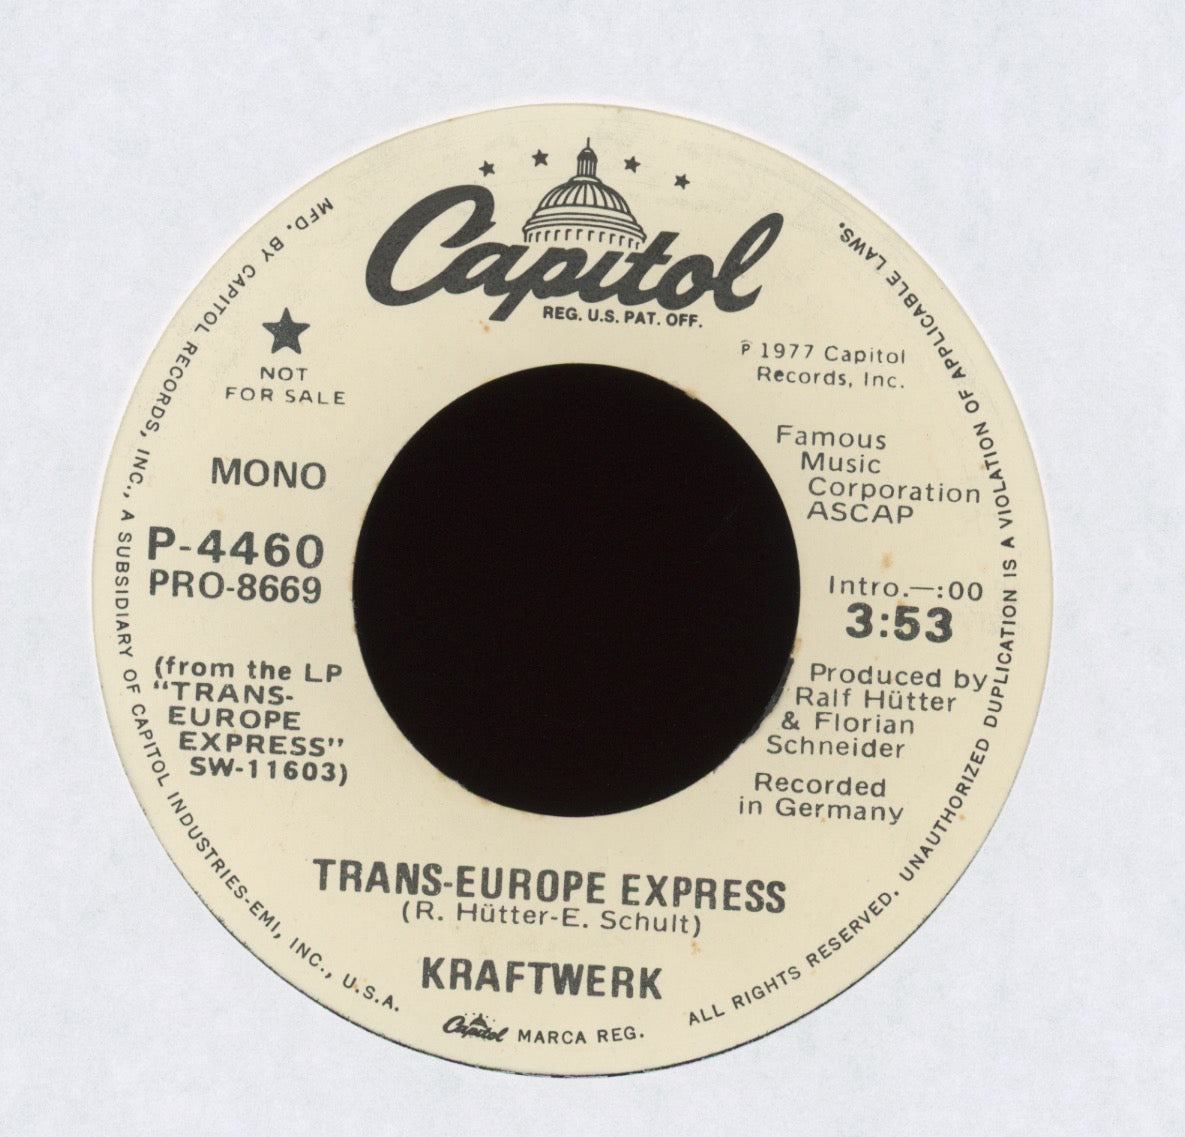 Kraftwerk - Trans-Europe Express on Capitol Promo